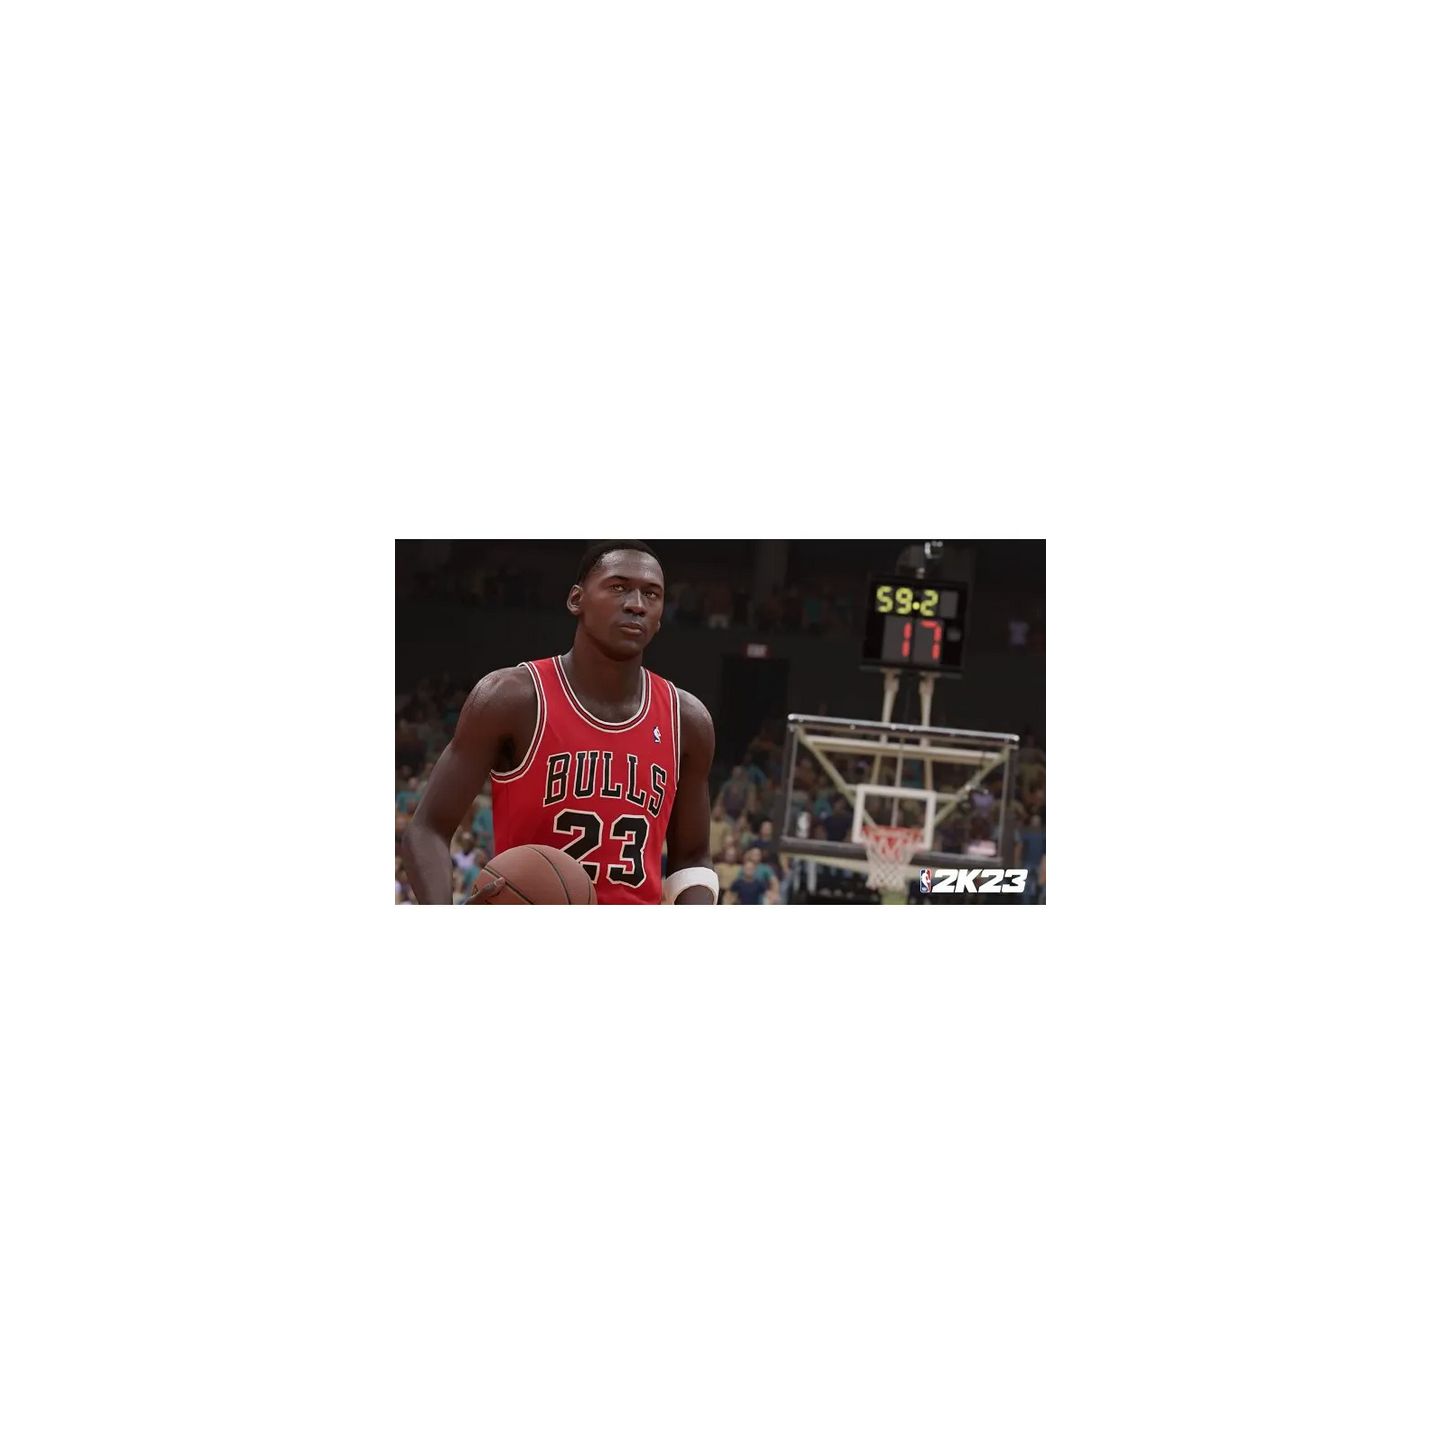 NBA 2K23 - PlayStation 5 